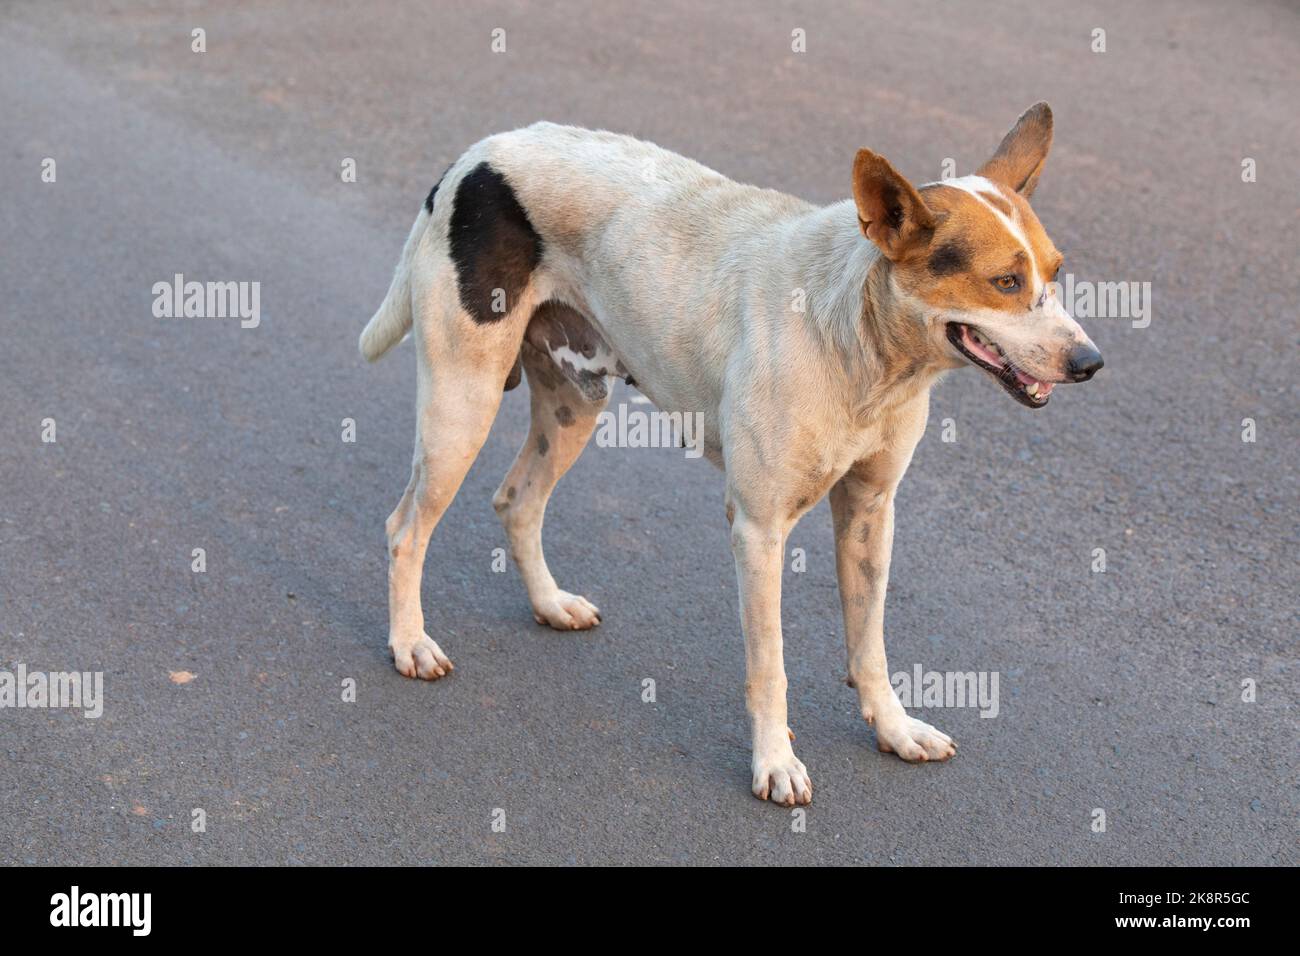 Der indische Pariah-Hund, auch bekannt als der indische einheimische Hund. Stockfoto